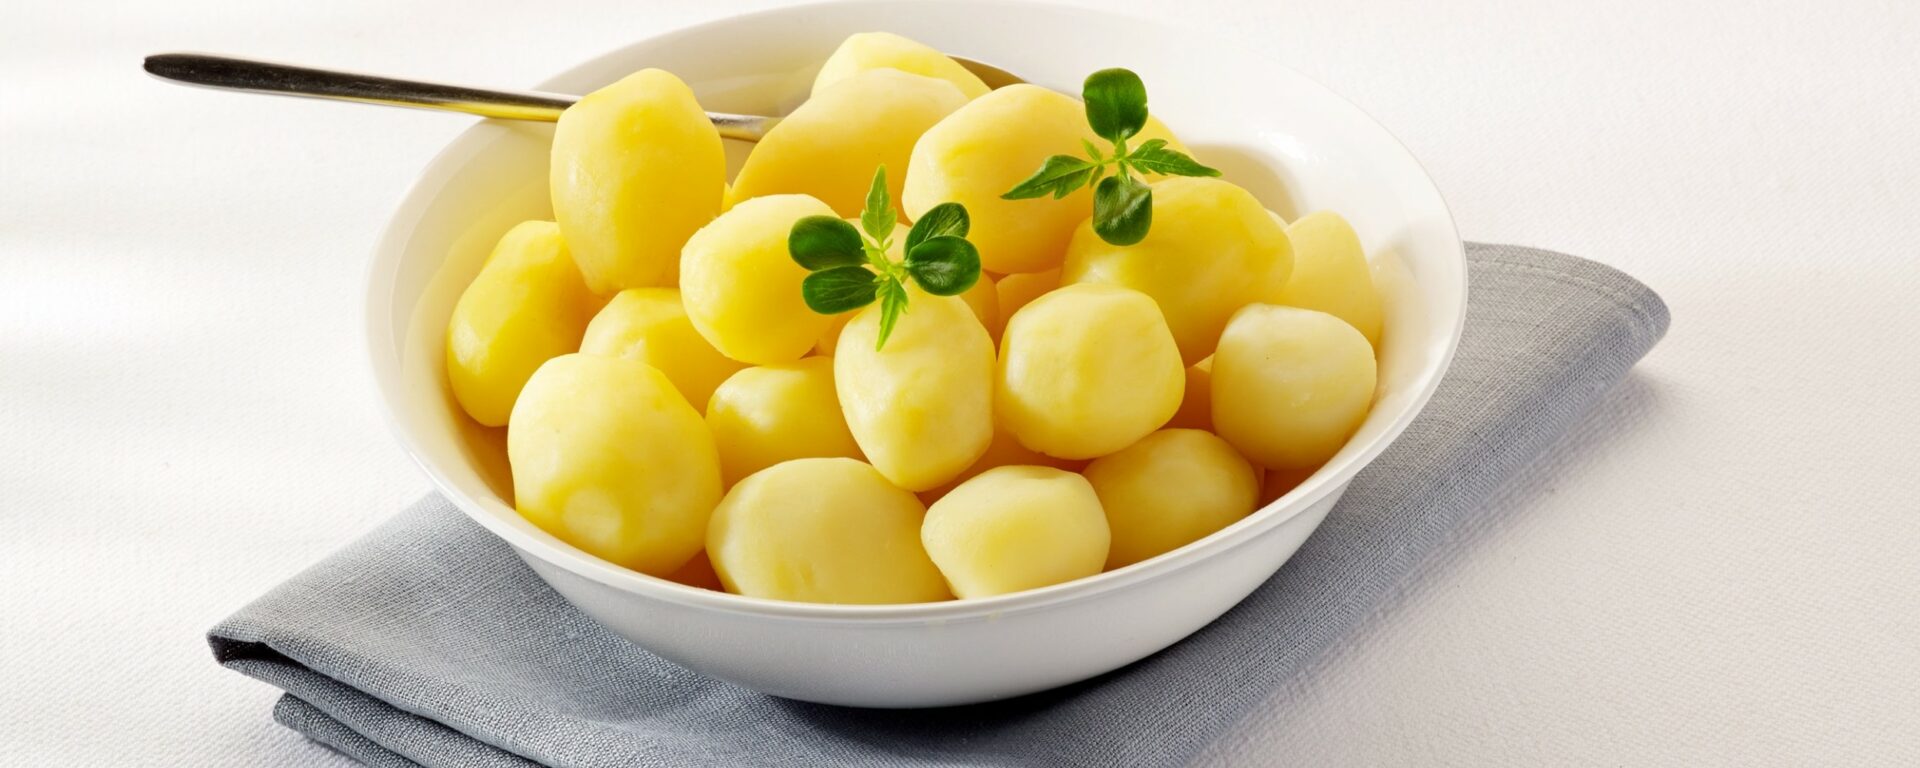 100% gare fijne aardappelen